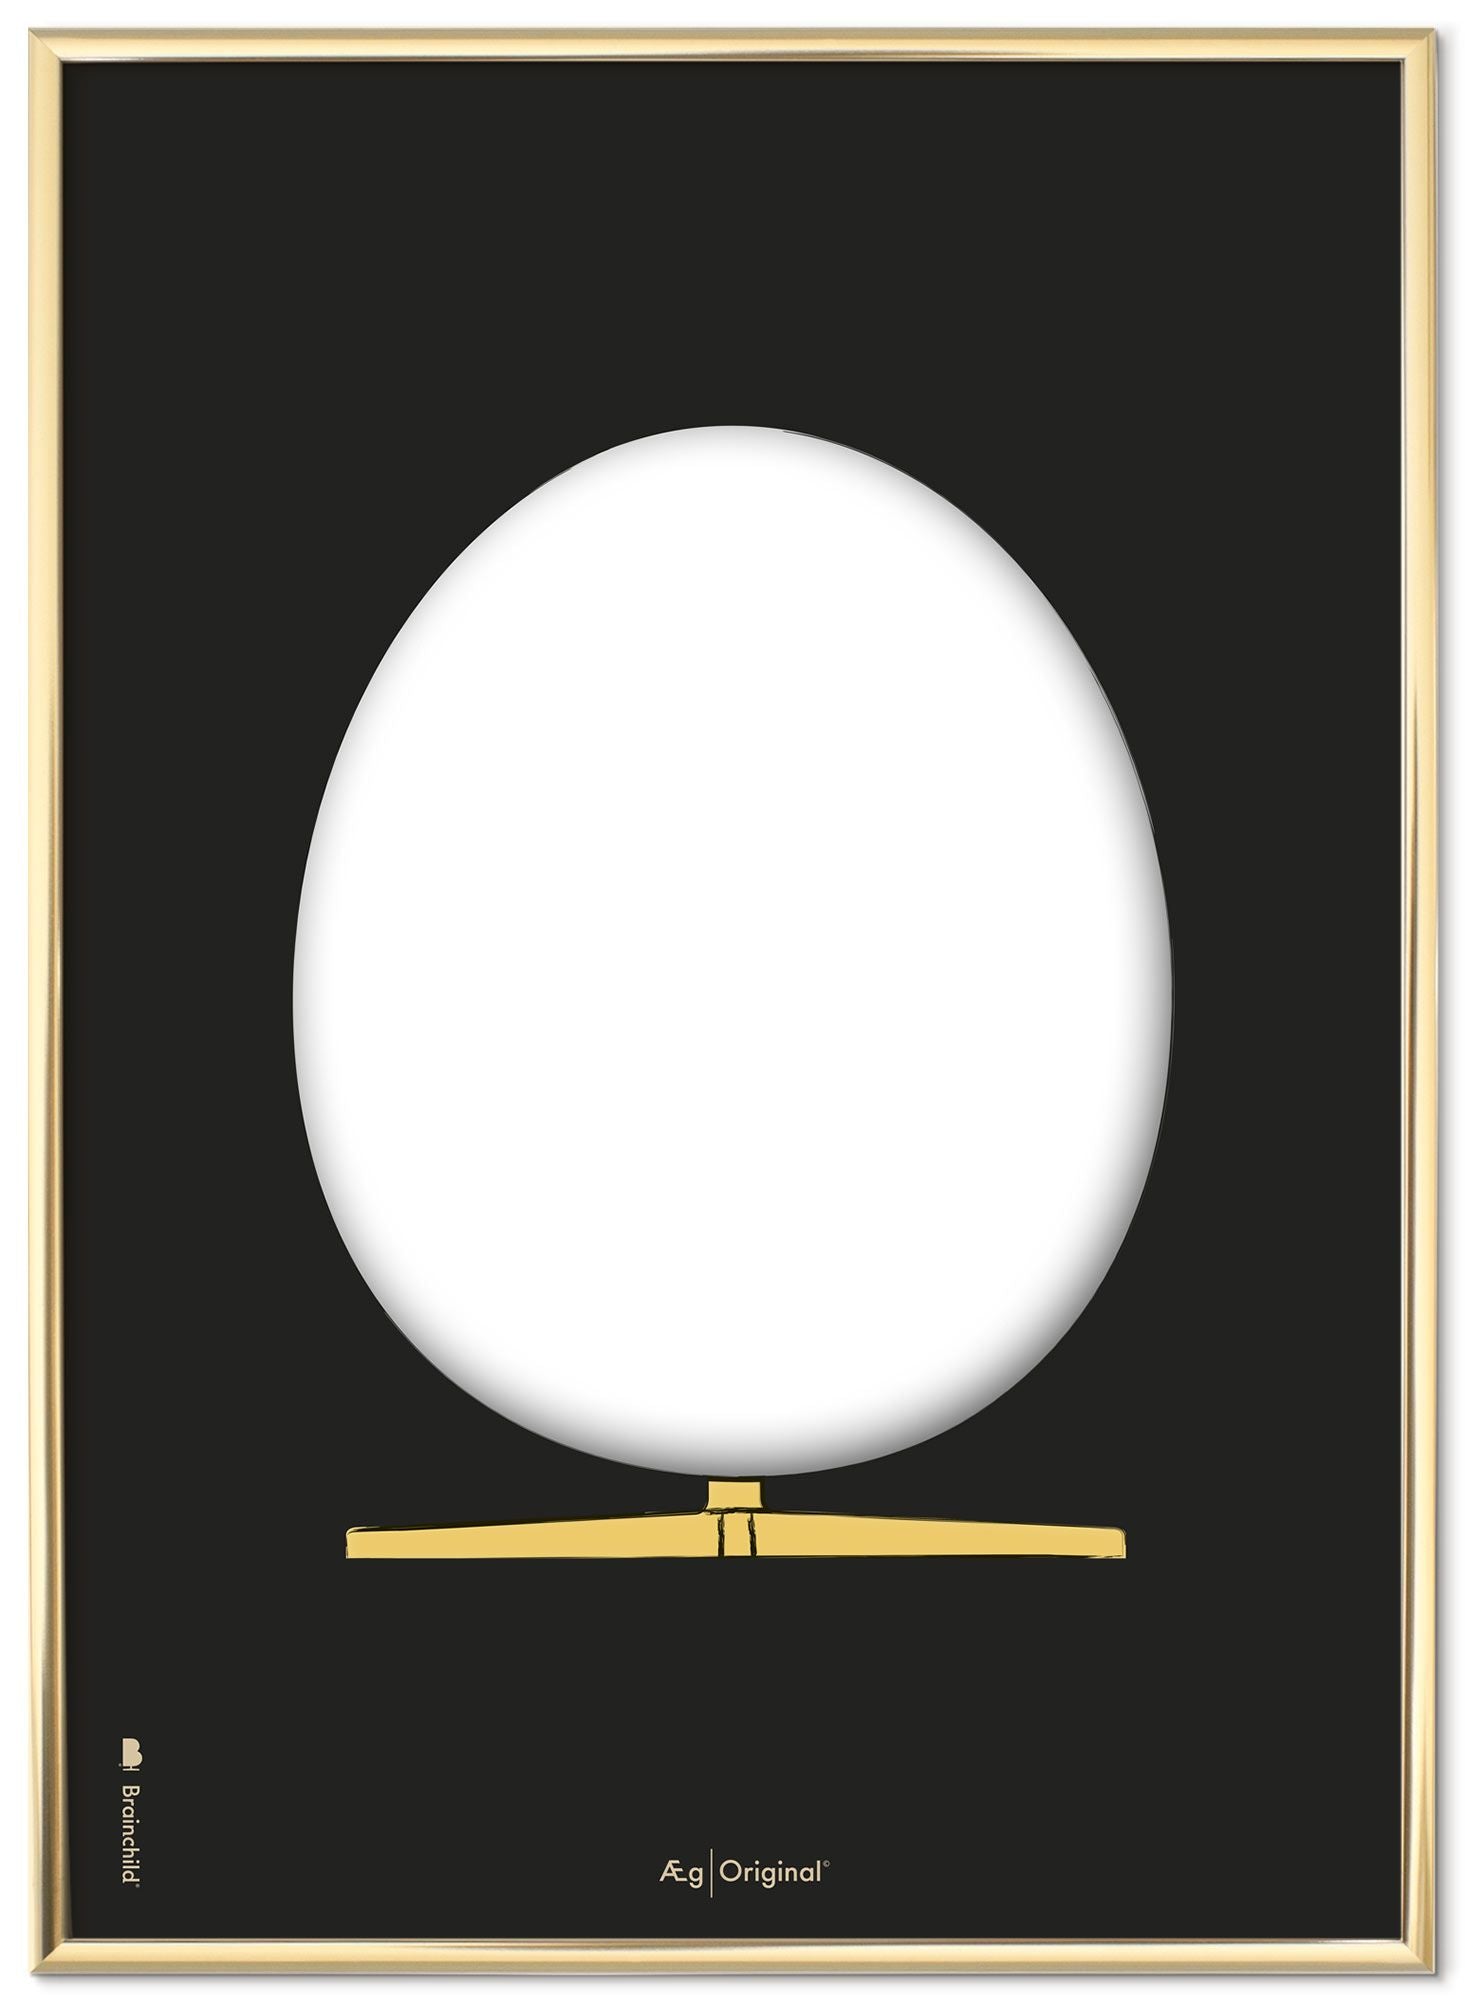 Brainchild Das Eierdesign -Skizze Posterrahmen aus messinffarbenem Metall 50x70 cm, schwarzer Hintergrund